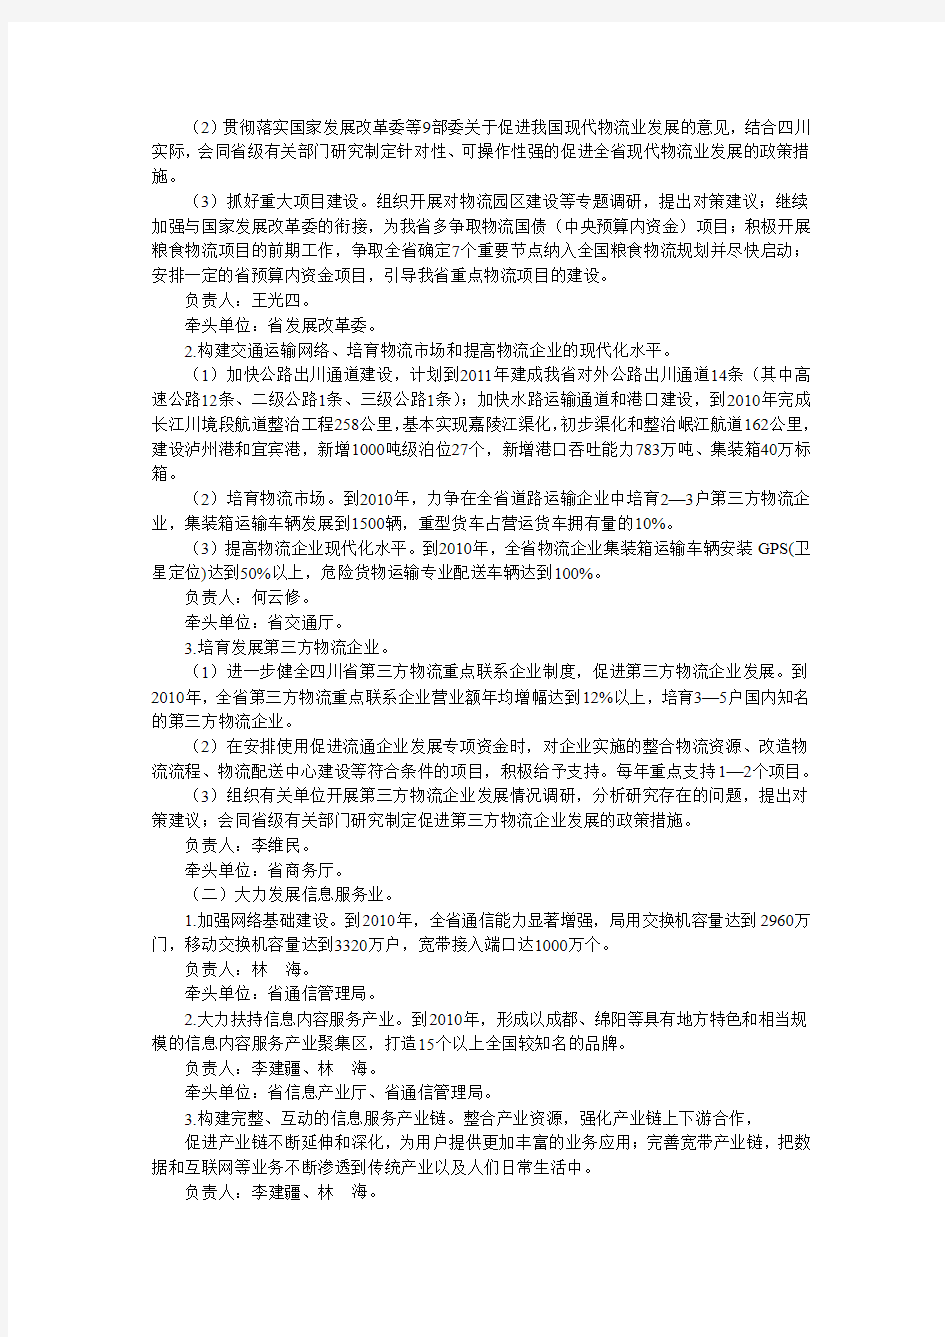 四川省人民政府办公厅关于落实省政府要求加快生产性服务业发展的工作安排意见